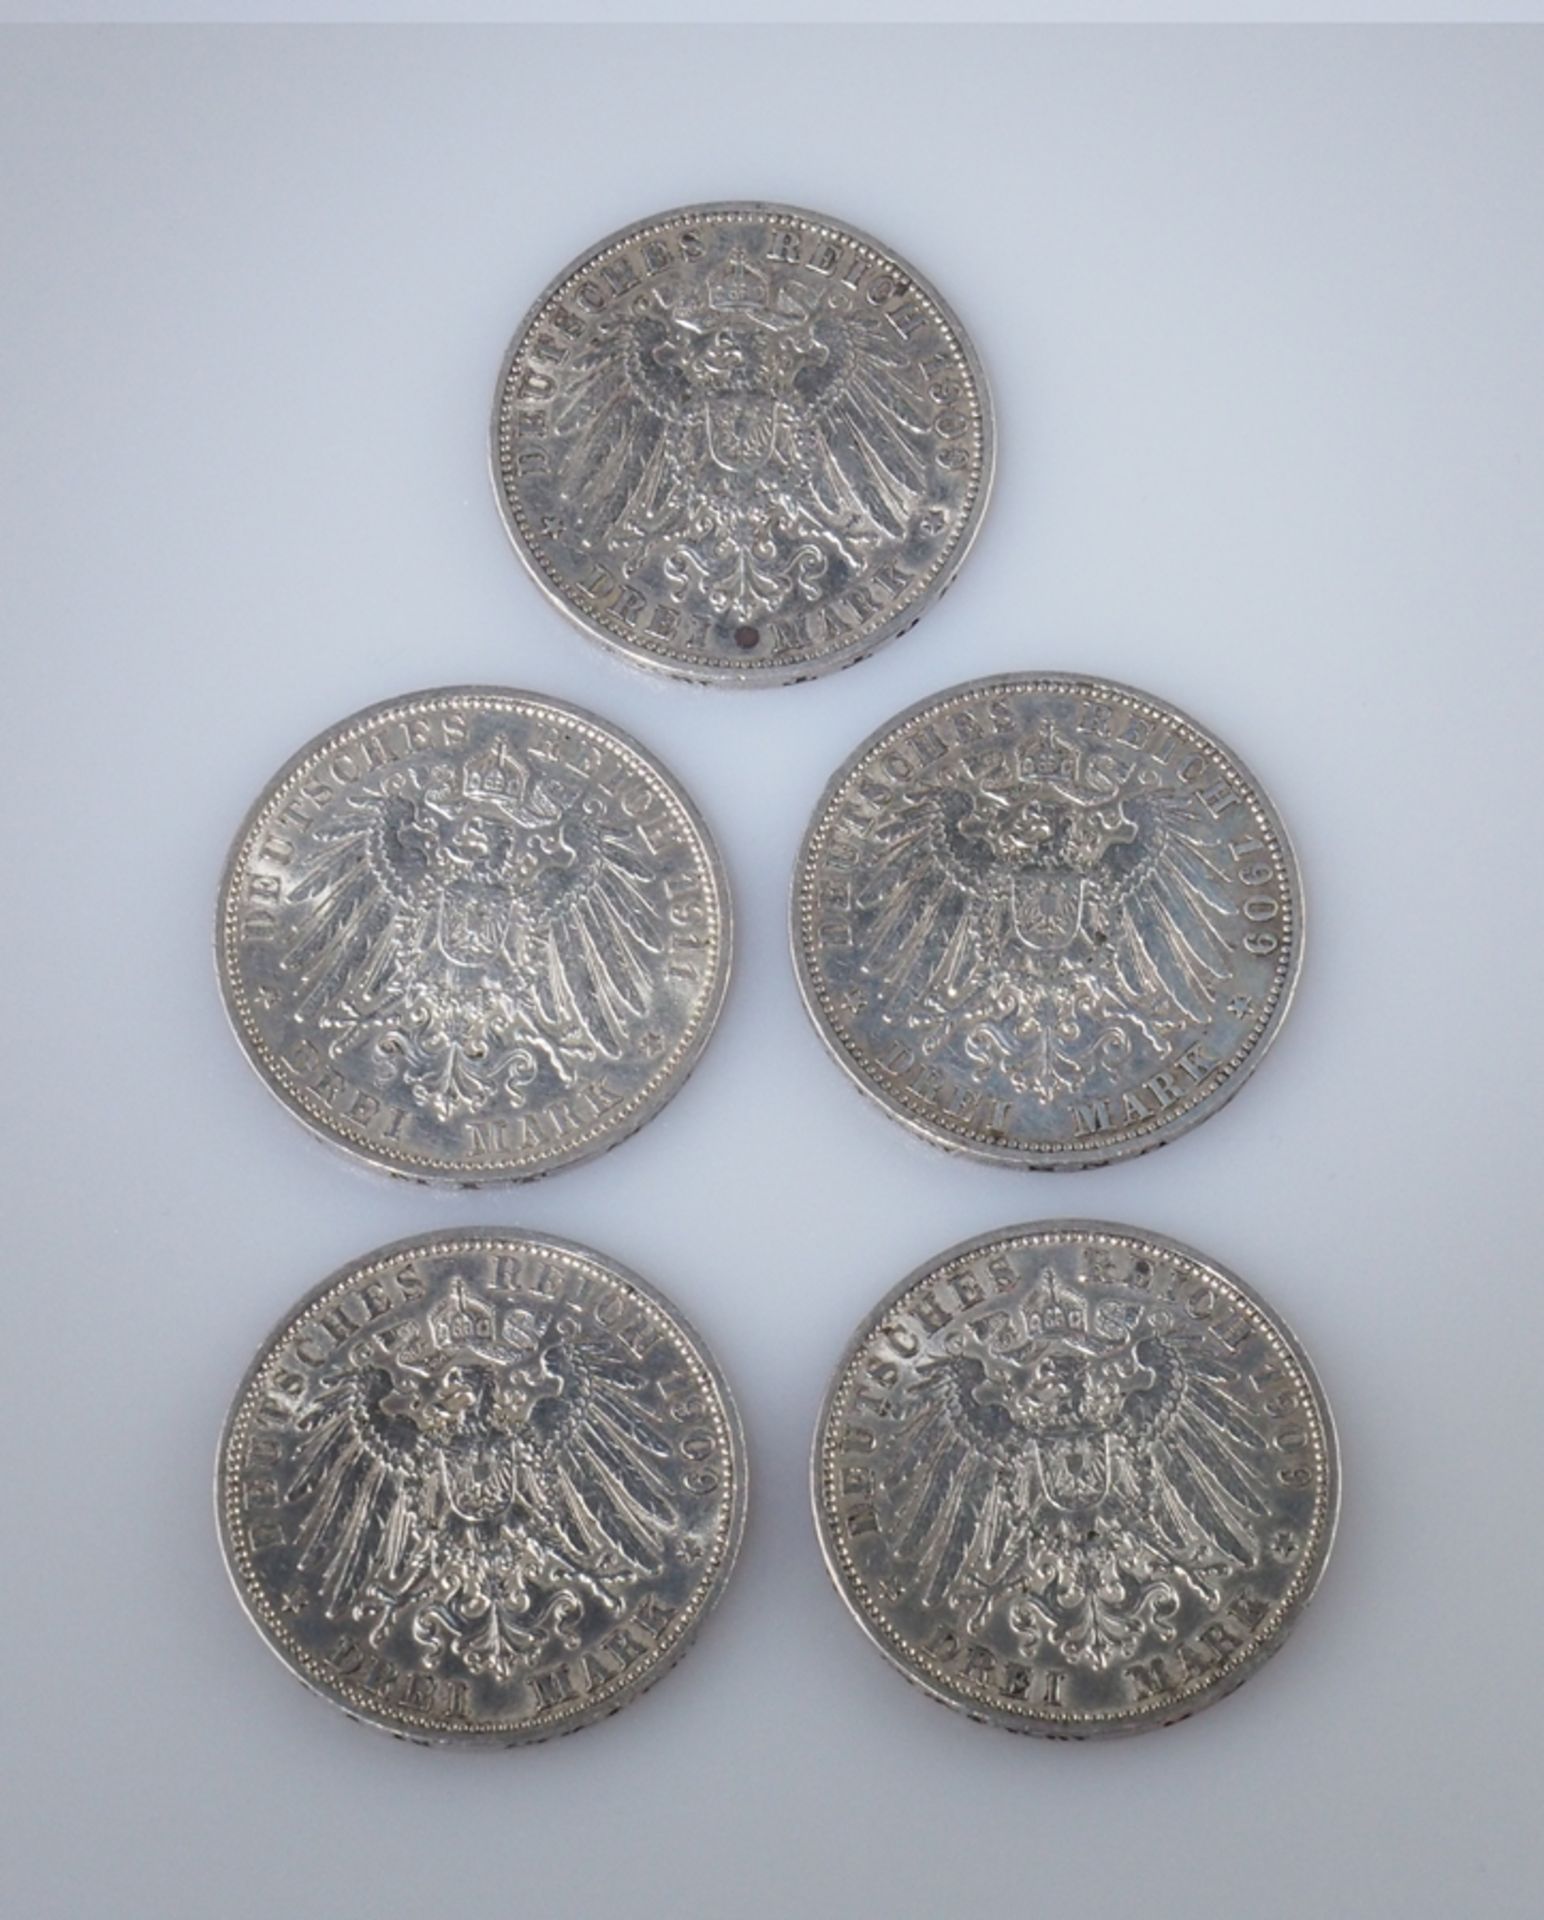 Preußen. Drei Mark. Fünf Münzen: vier Stück 1909 und ein Stück 1911. J 103 - Bild 2 aus 2